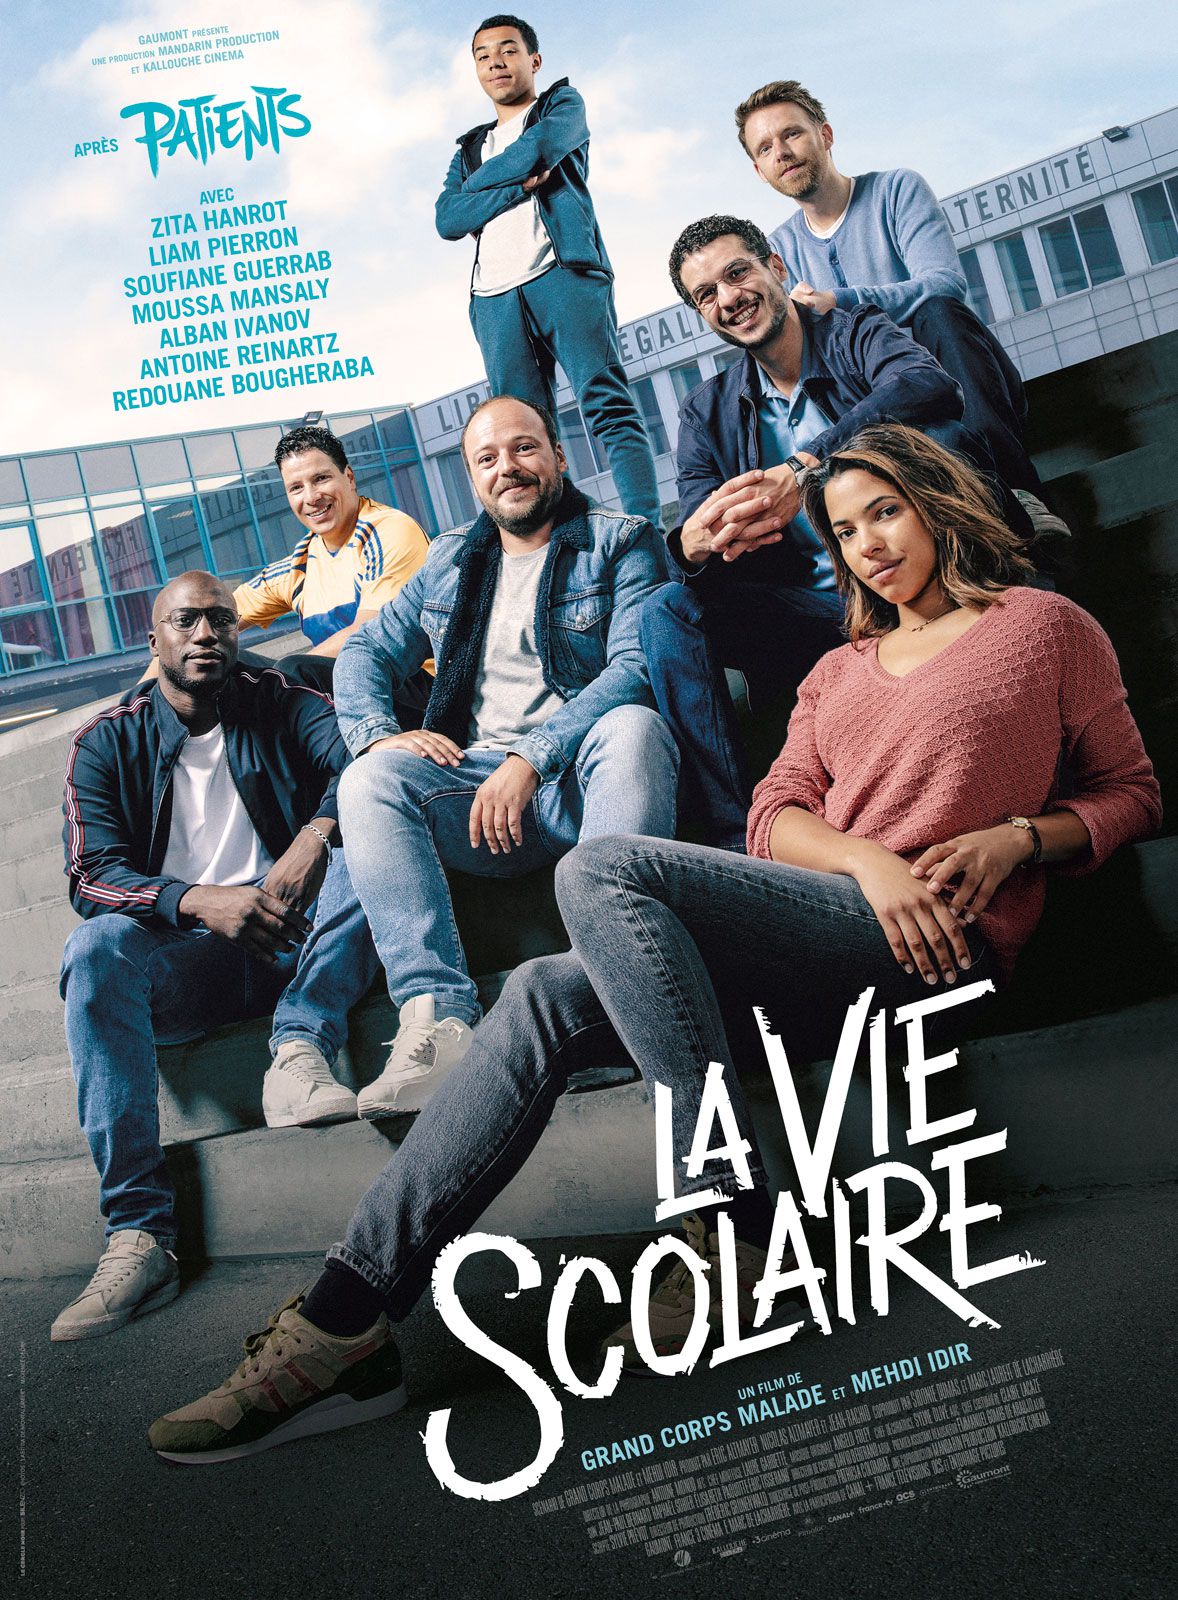 La Vie scolaire - Film (2019) streaming VF gratuit complet